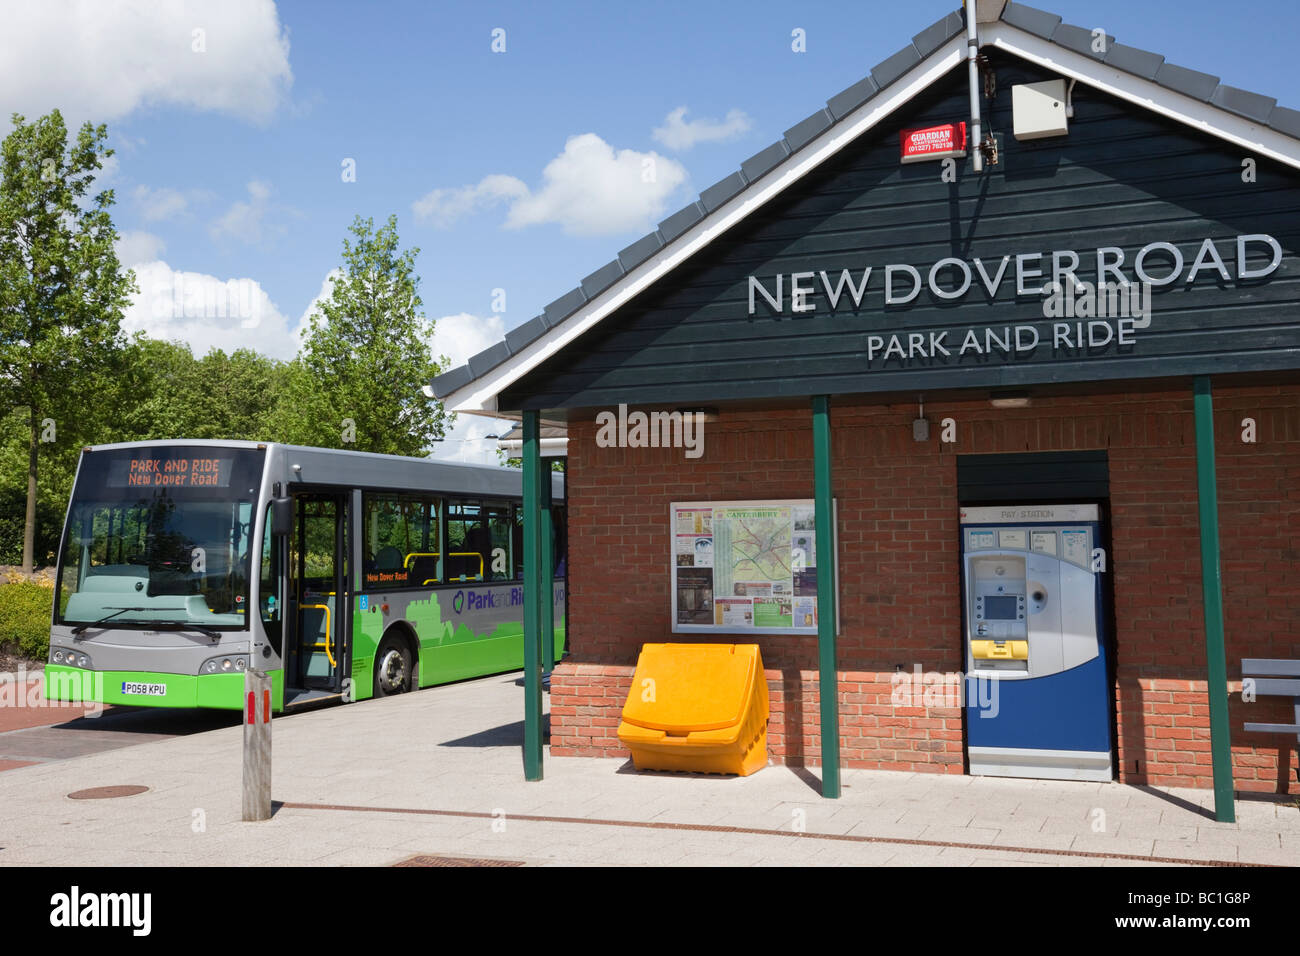 Canterbury Kent England UK Europe seul decker bus à New Dover Road parking park and ride de bus avec ticket machine Banque D'Images